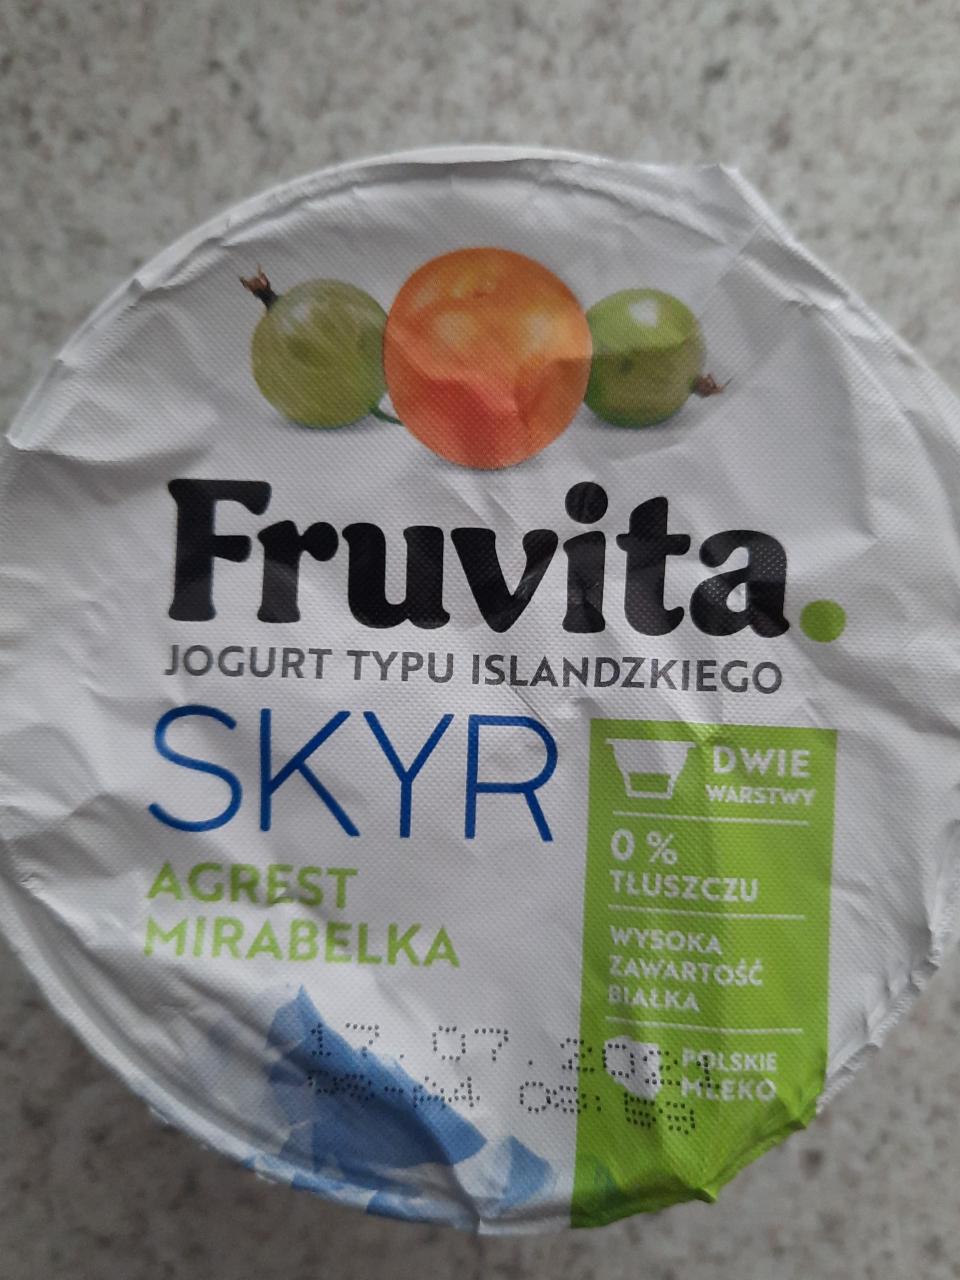 Zdjęcia - Fruvita jogurt typu islandzkiego skyr agrest mirabelka